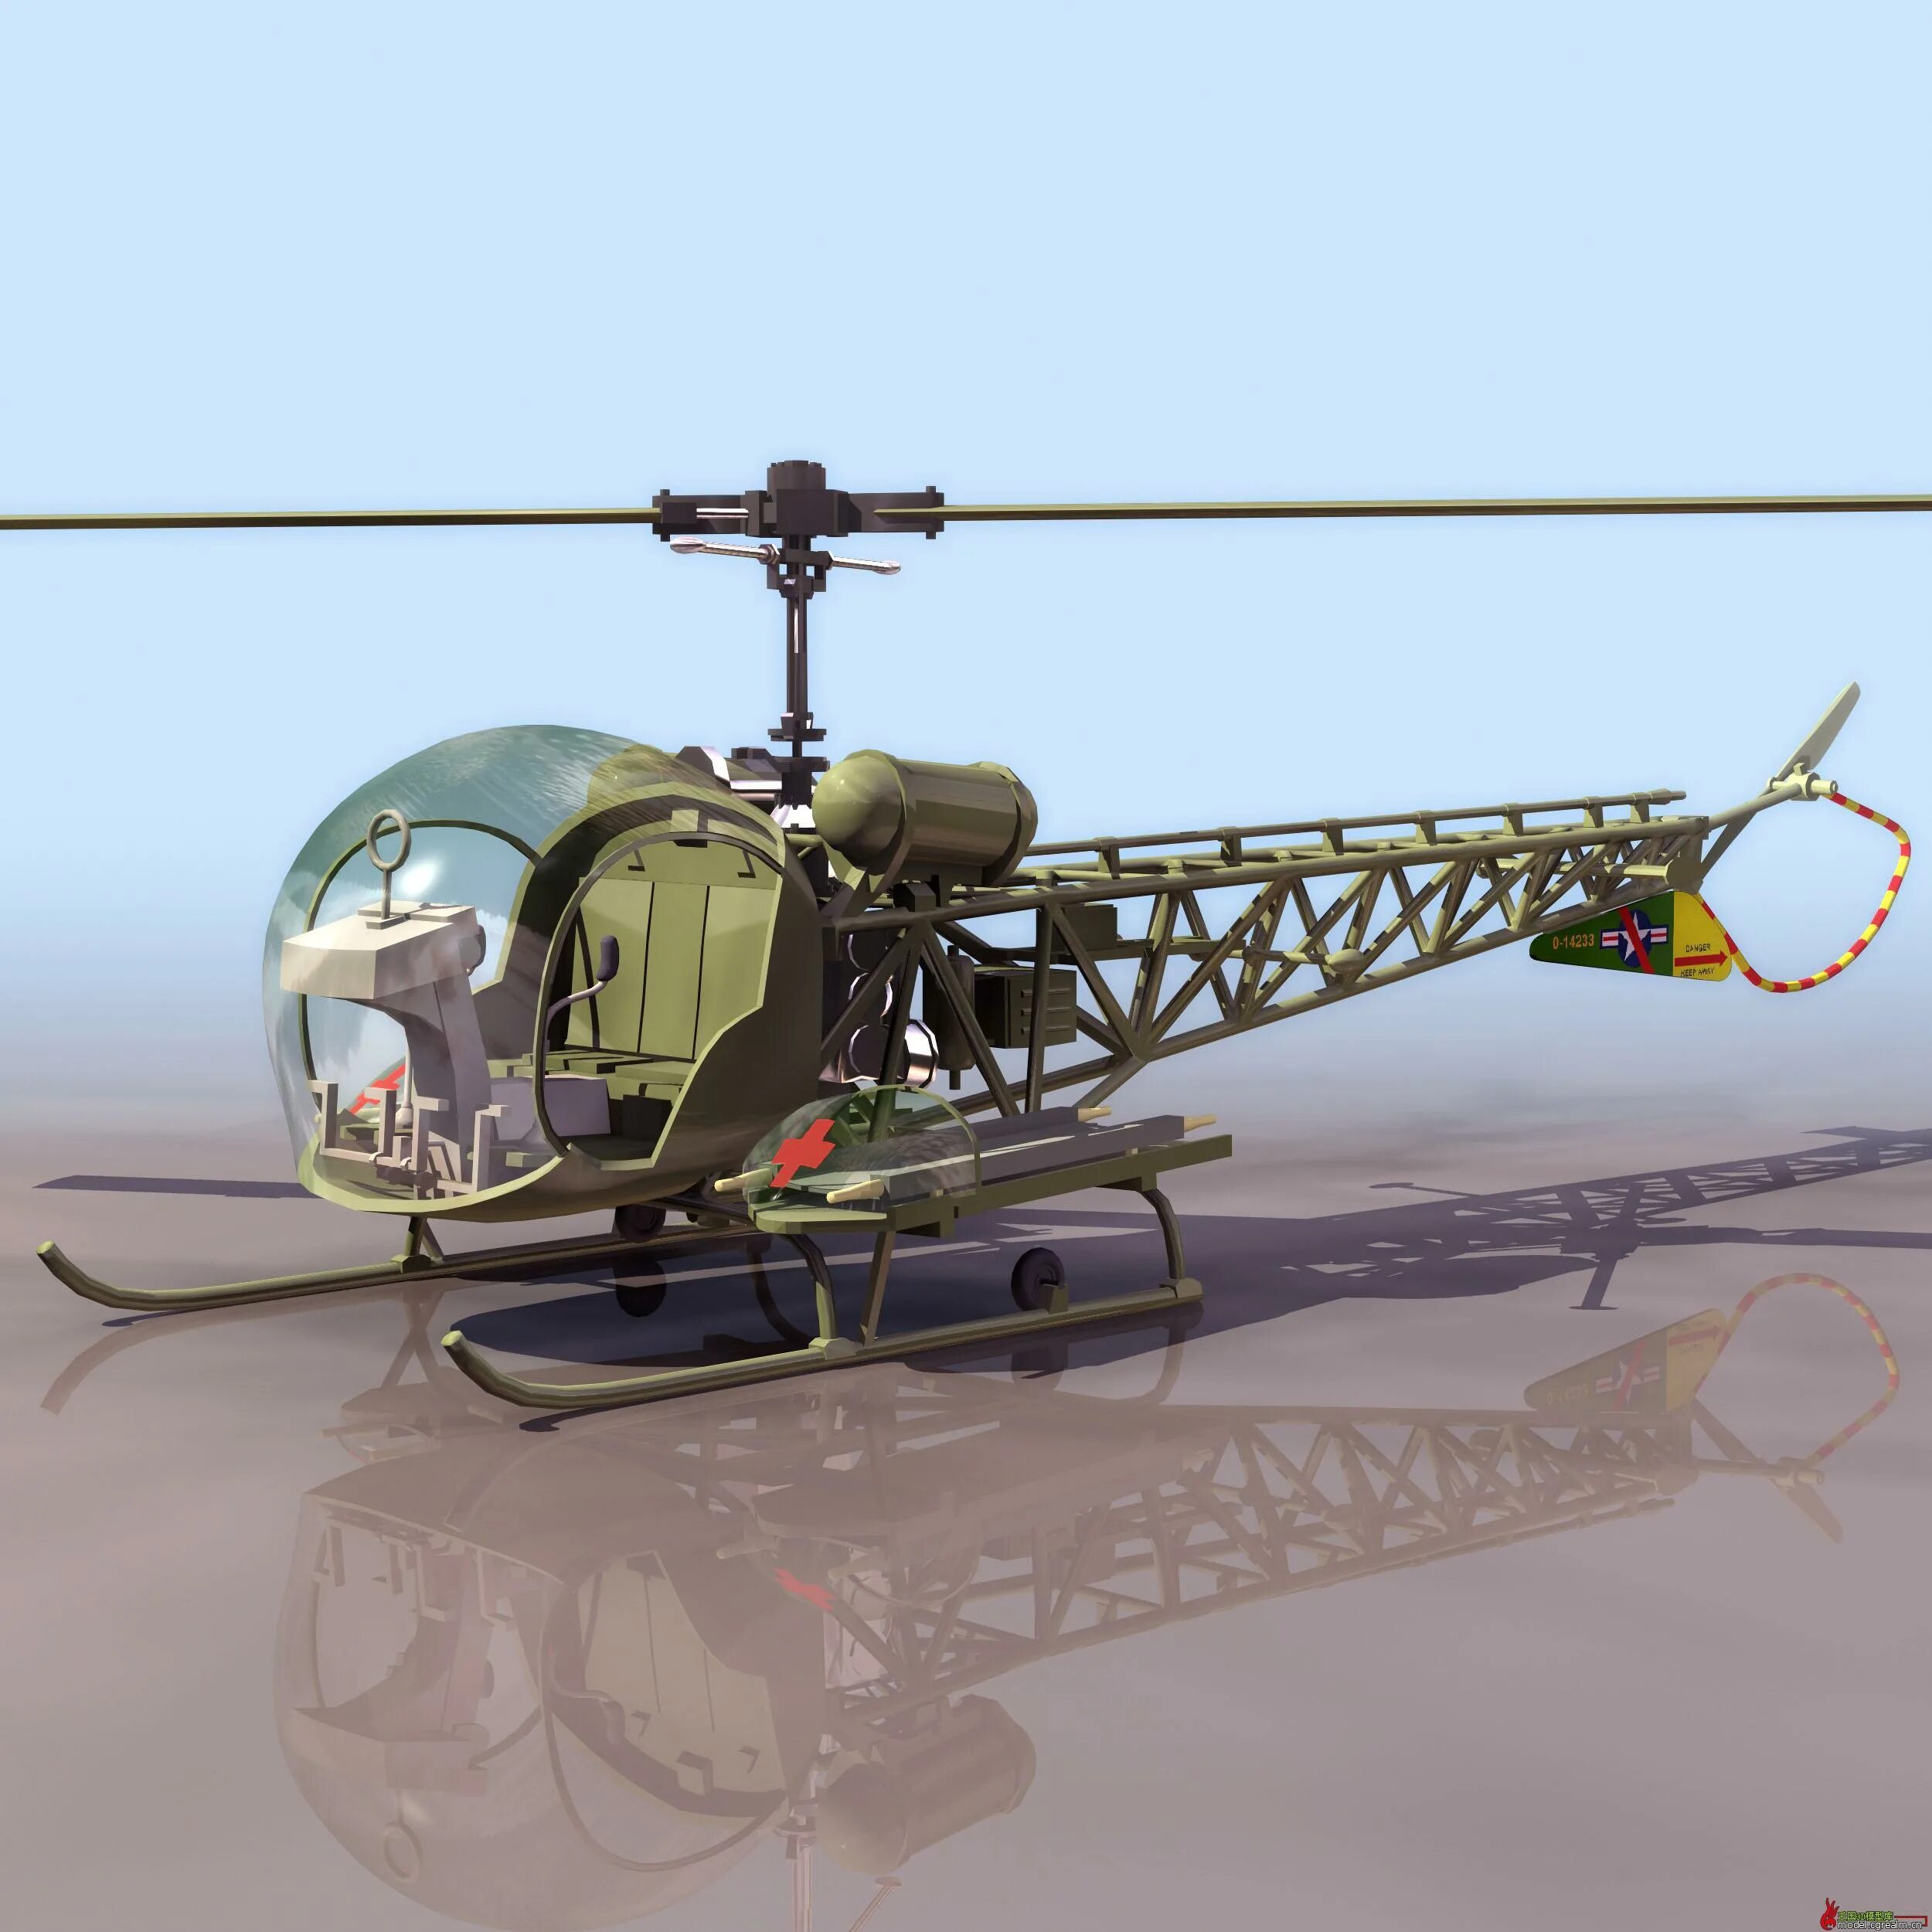 H h 13 6. Bell h-13 Sioux. Вертолет Bell h13. Bell h13 вертолёт спасательный. Bell model 47 "Sioux".